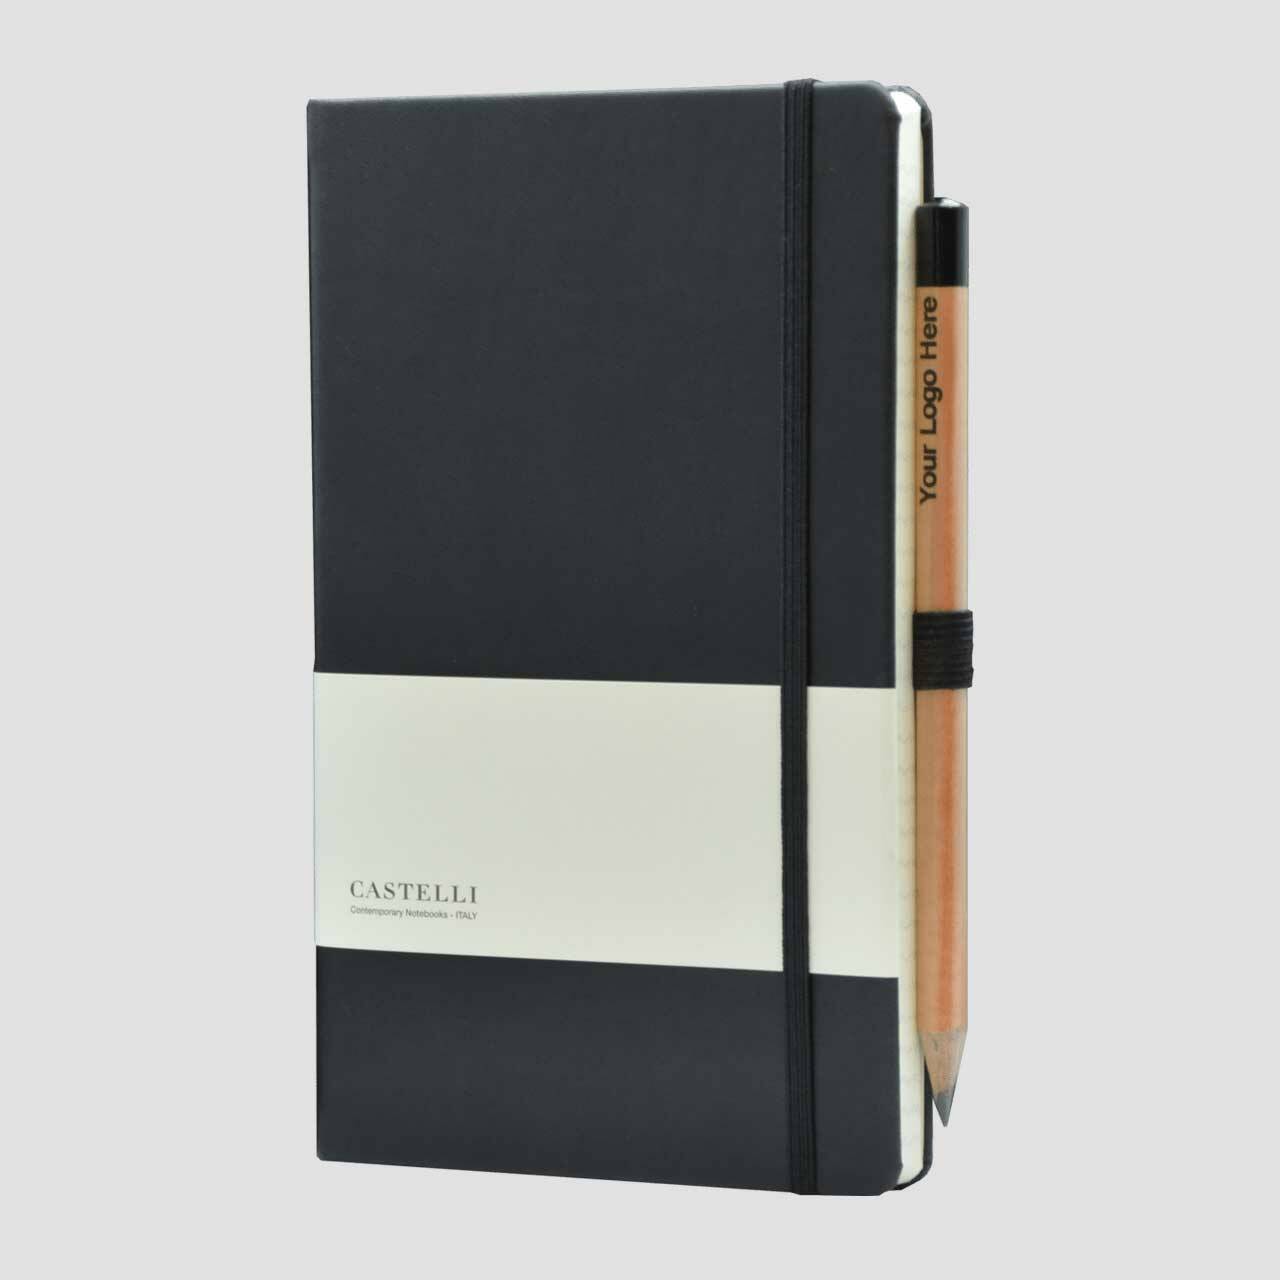 Castelli notitieboek soft touch met banderol en potlood met houder, zwart